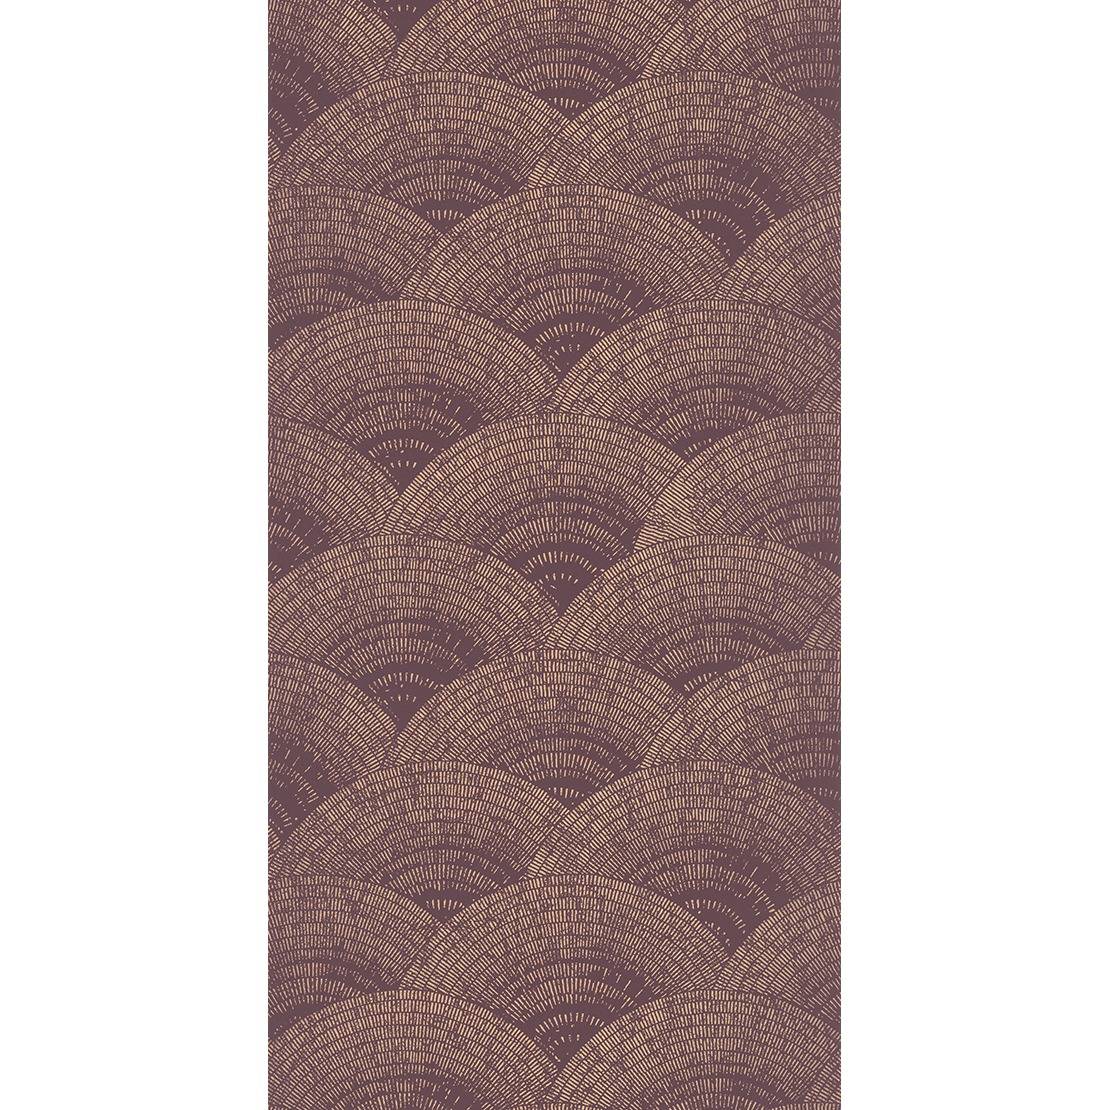 rose gold wallpaper,violet,purple,brown,beige,pink